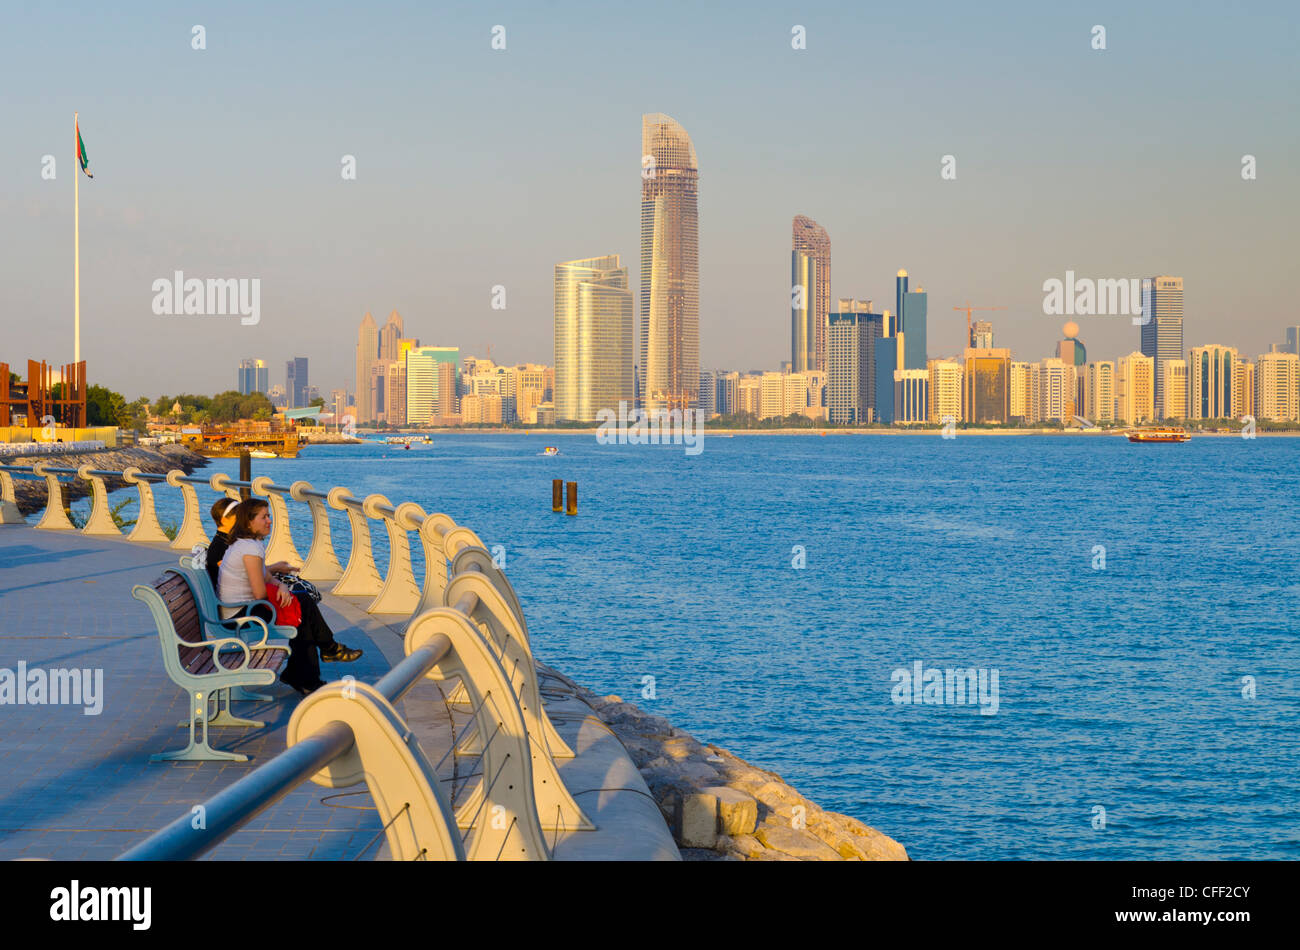 City skyline, Abu Dhabi, United Arab Emirates, Middle East Stock Photo